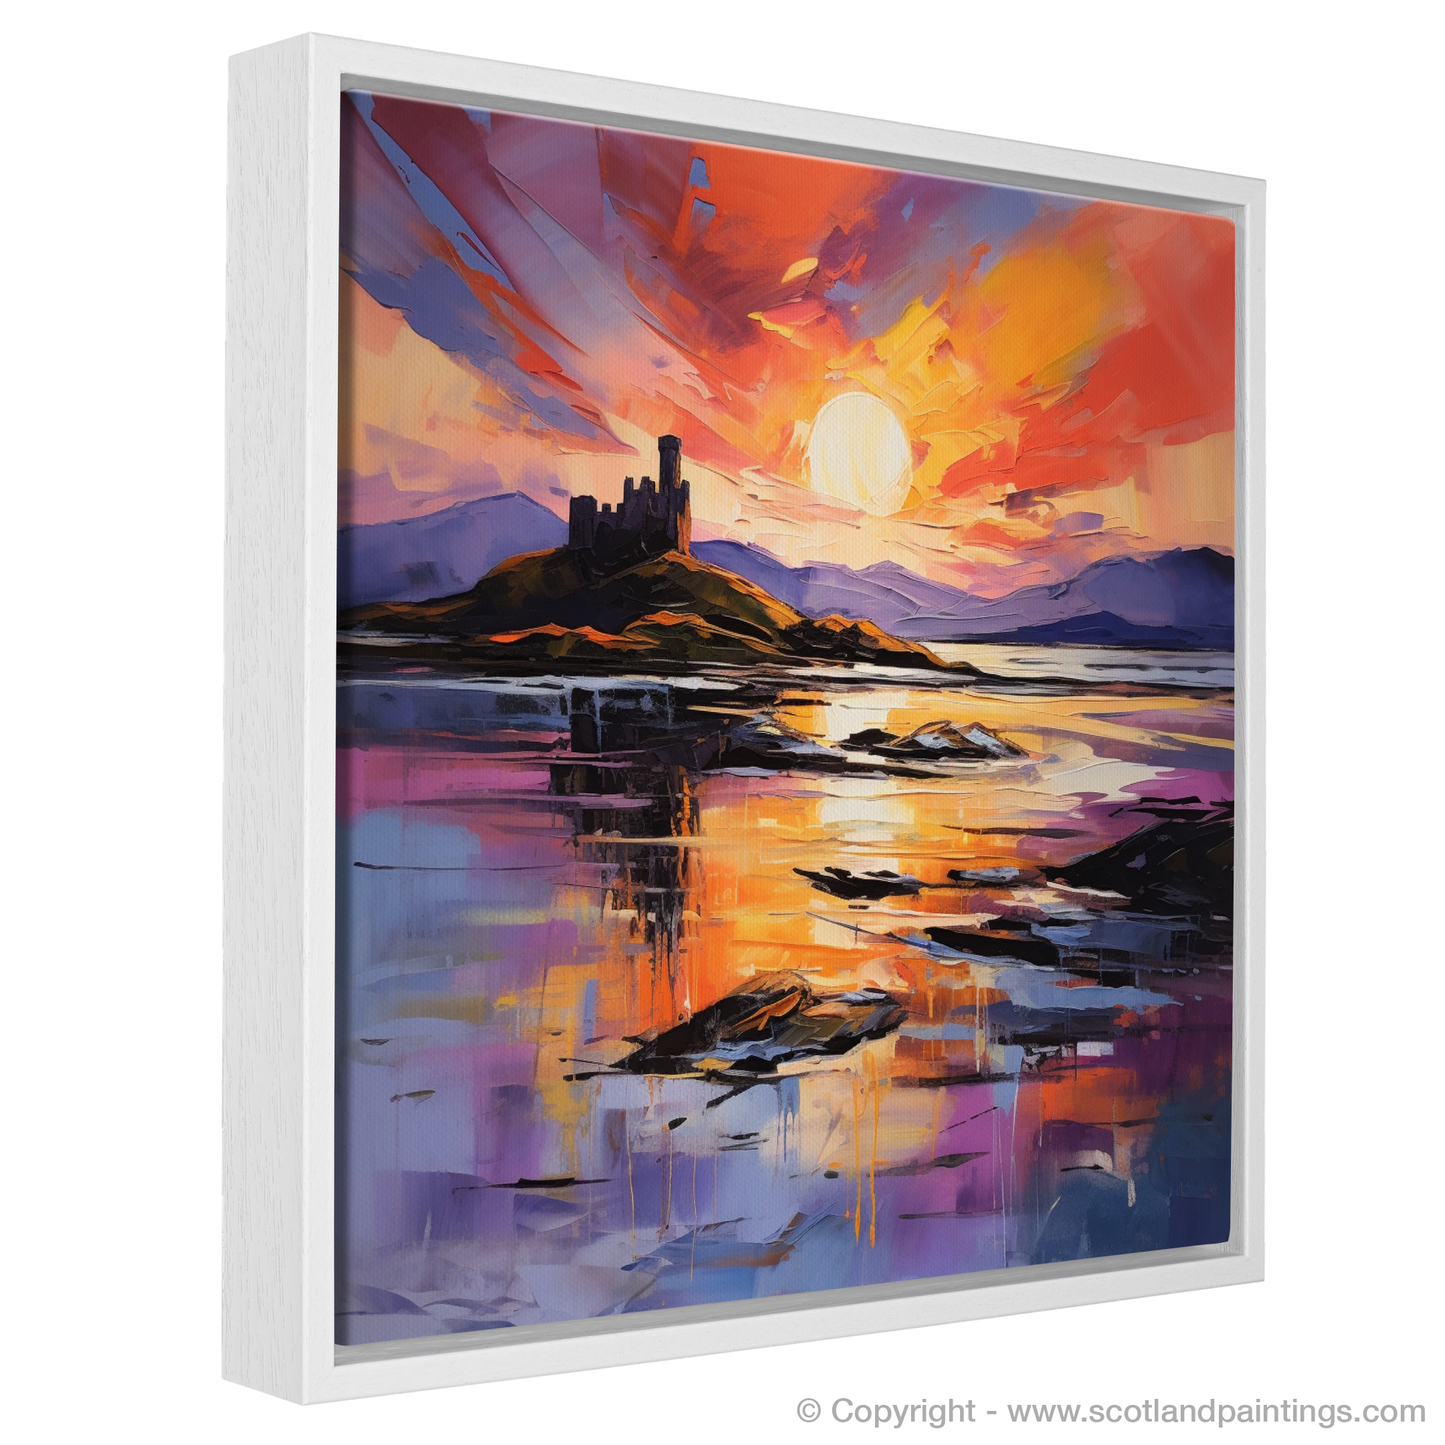 Painting and Art Print of Castle Stalker Bay at sunset entitled "Sunset Embrace at Castle Stalker Bay".